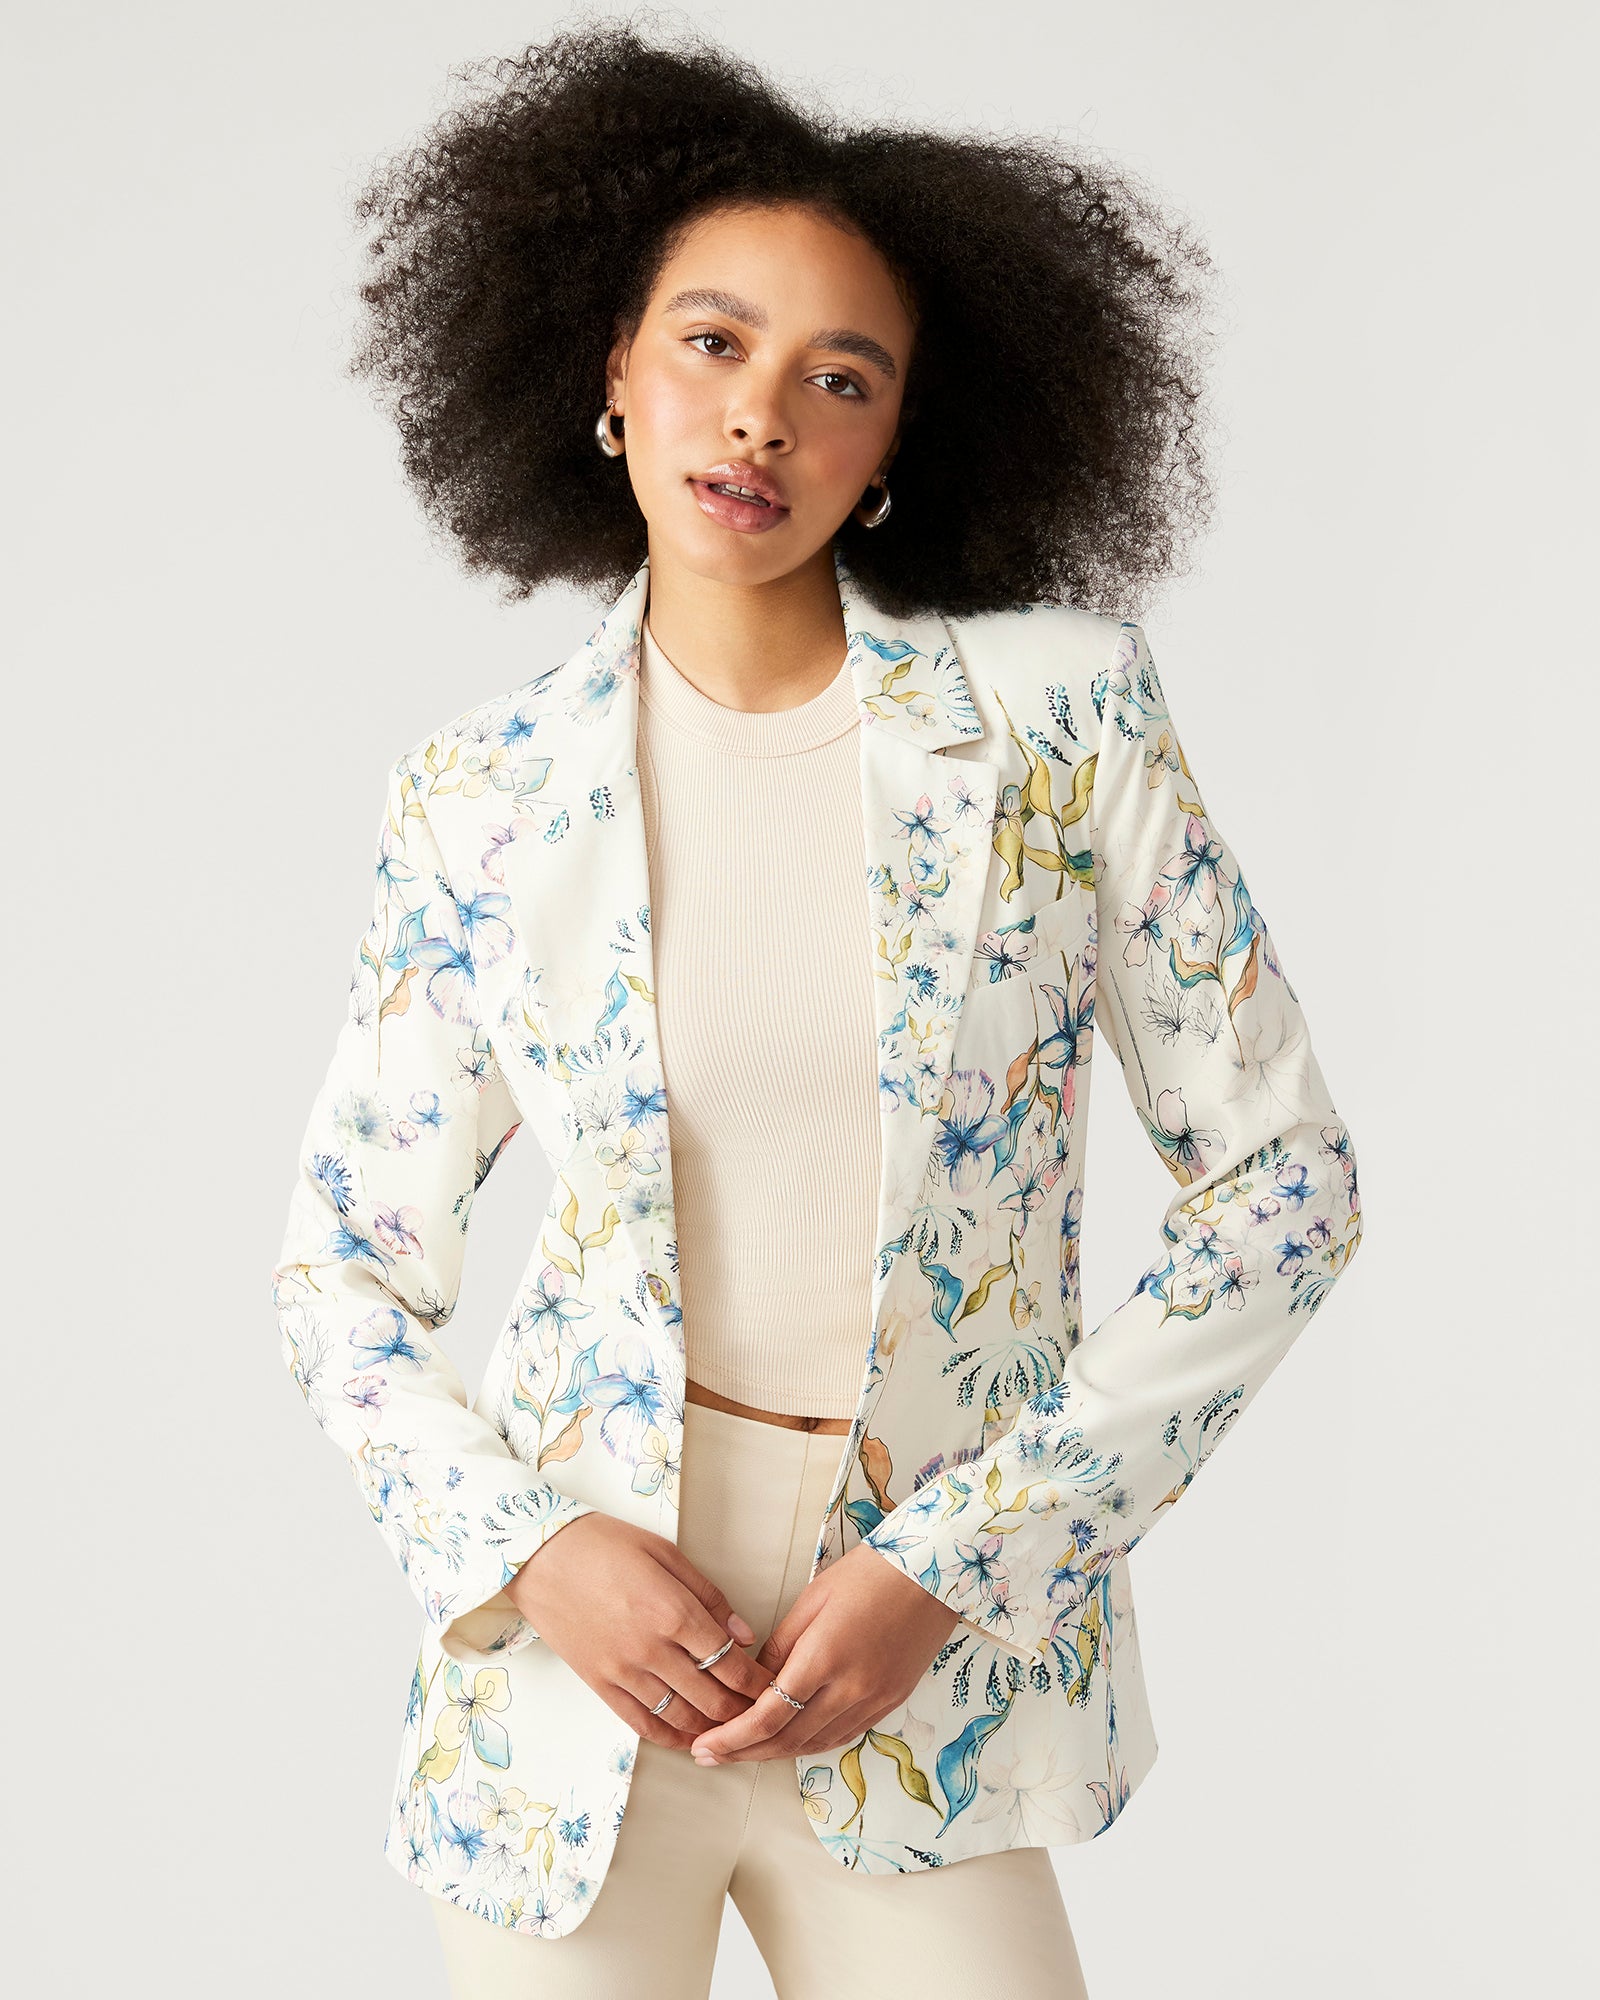 Jackets & Coats | Designer Women's Jackets, Blazers, Coats & Tops